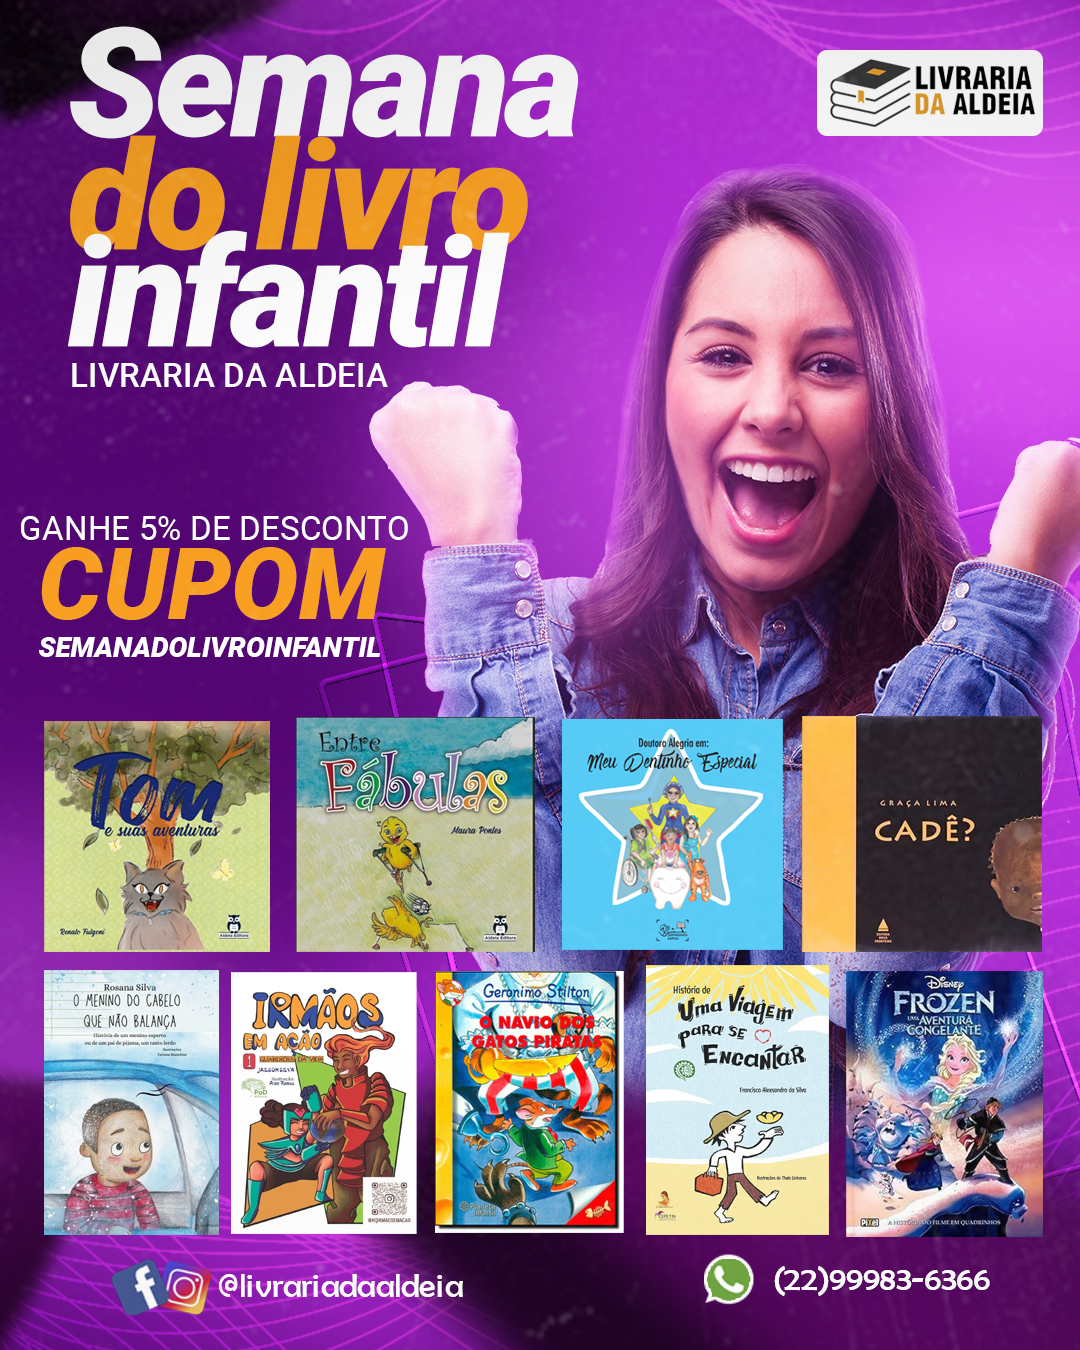 Celebre o Dia Nacional do Livro Infantil com a Livraria da Aldeia!